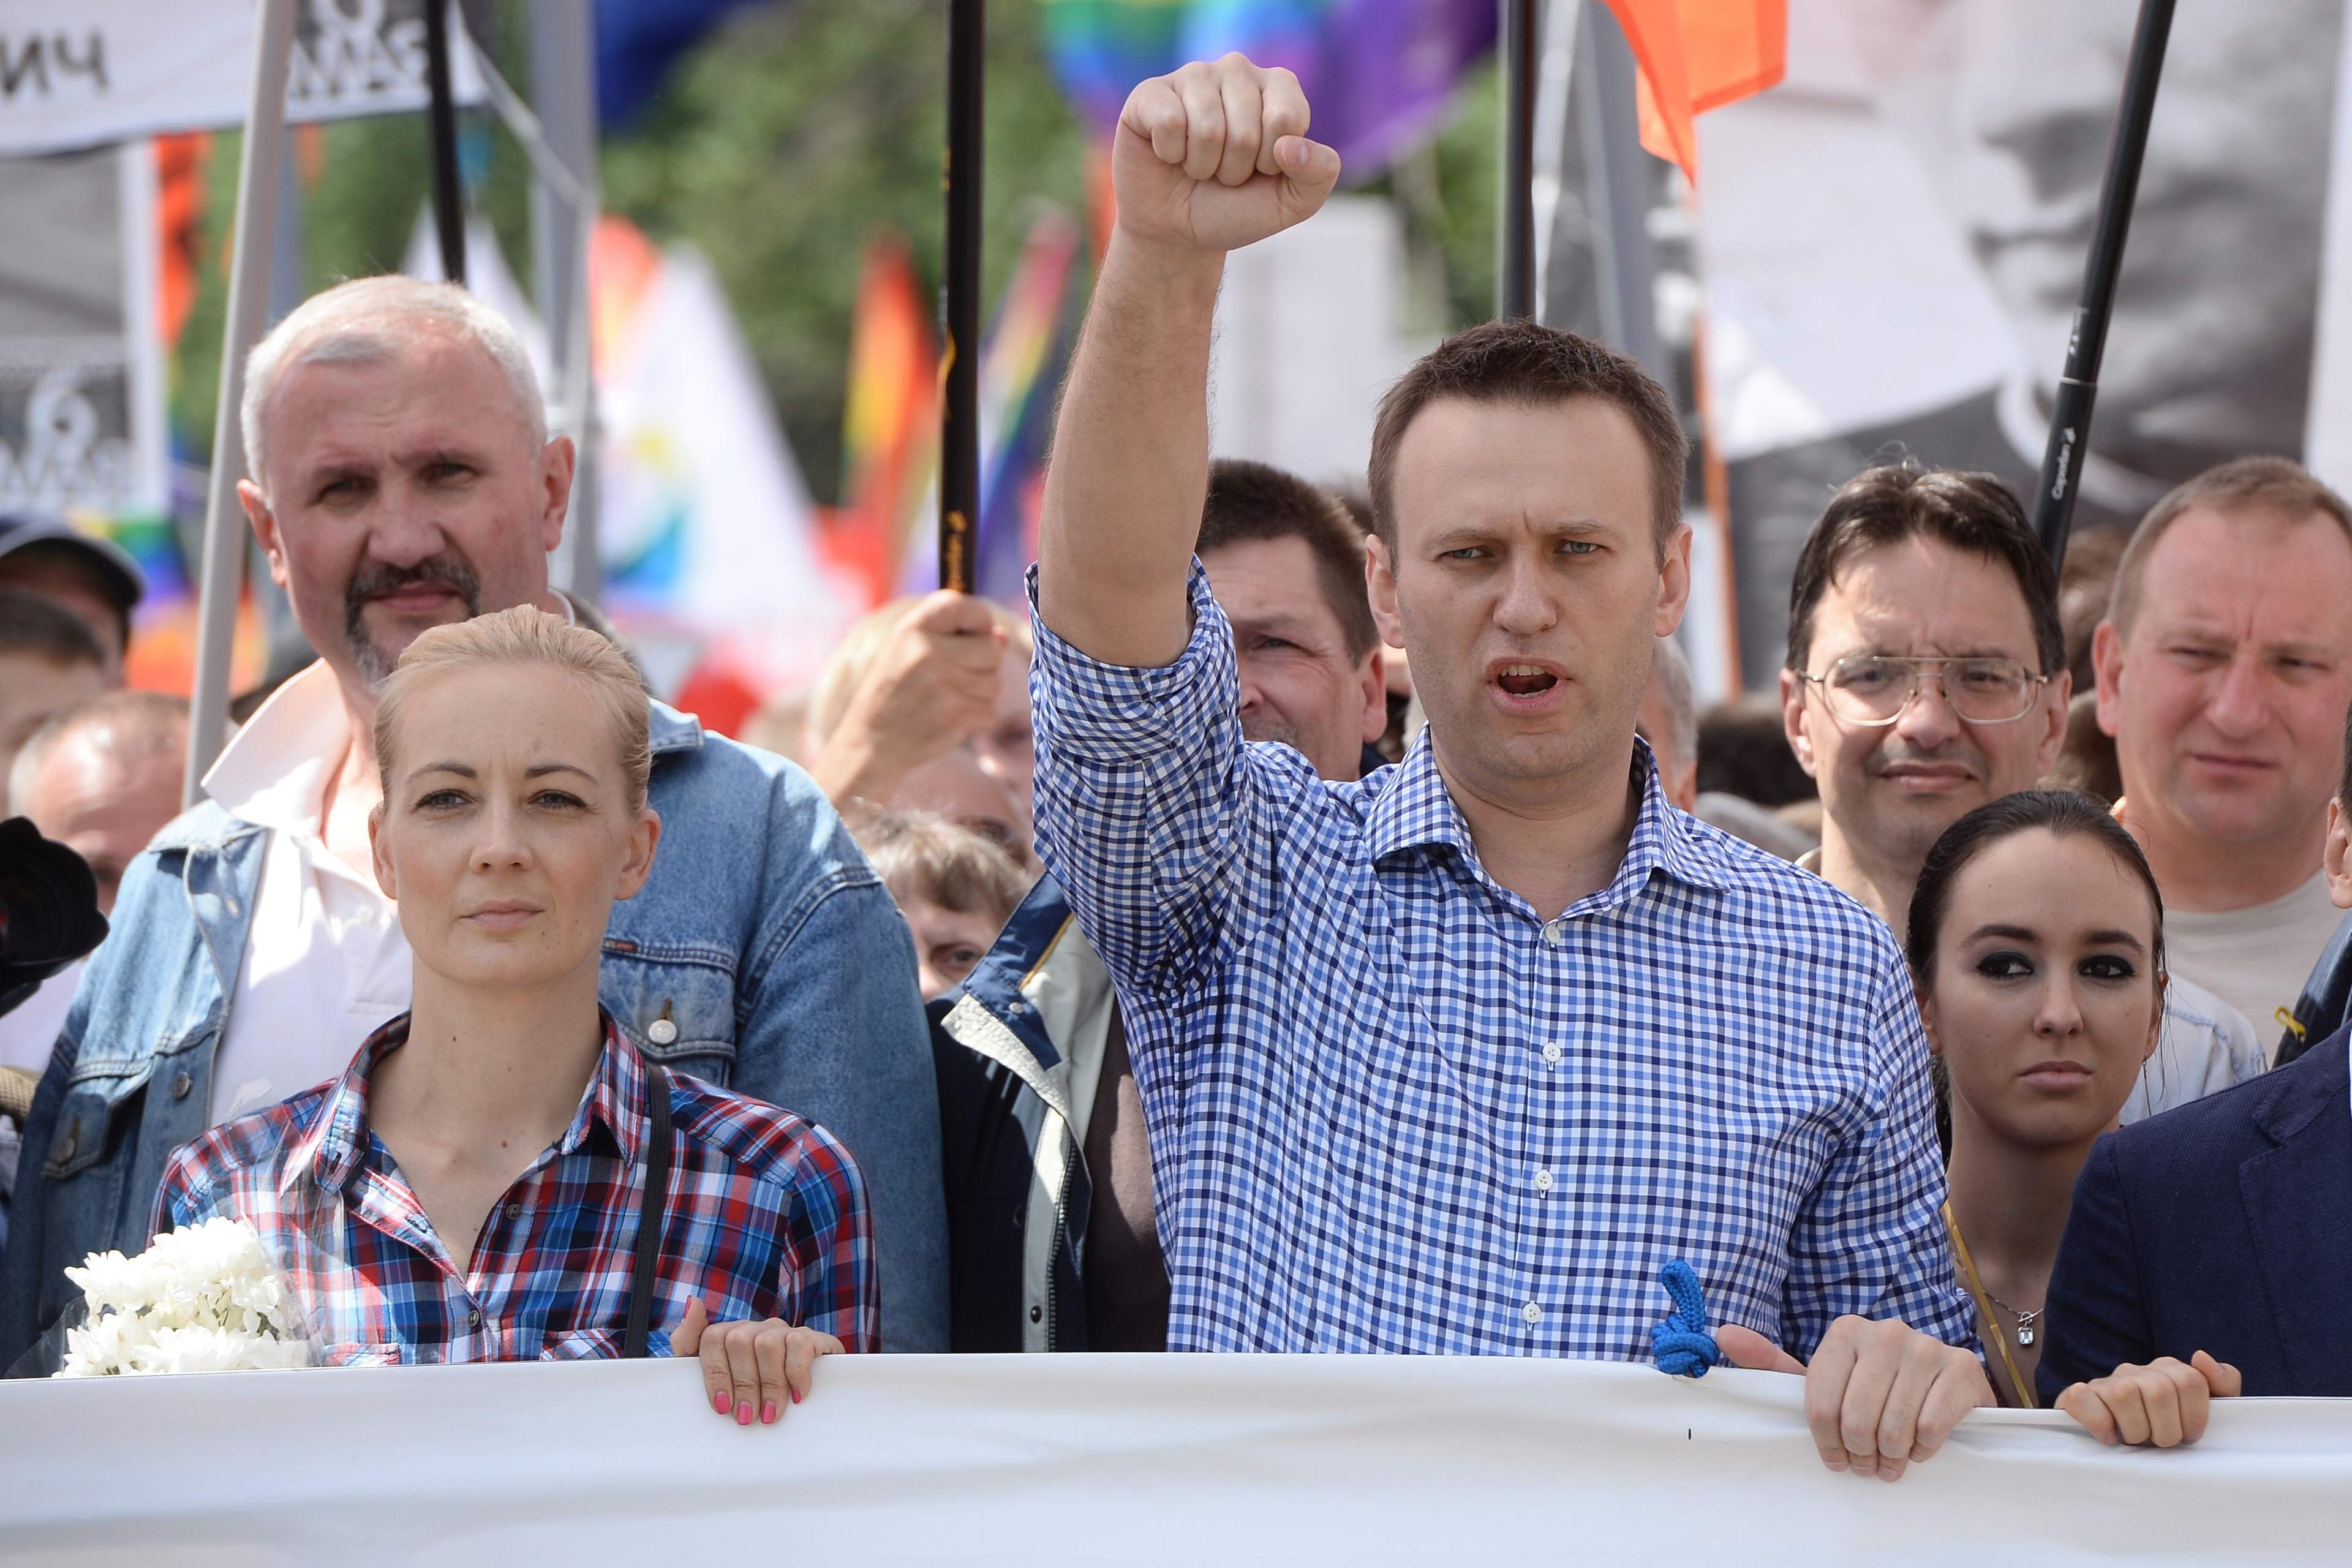 El certificat de defunció de Navalni: "mort sobtada" i les autoritats no volen entregar el cos